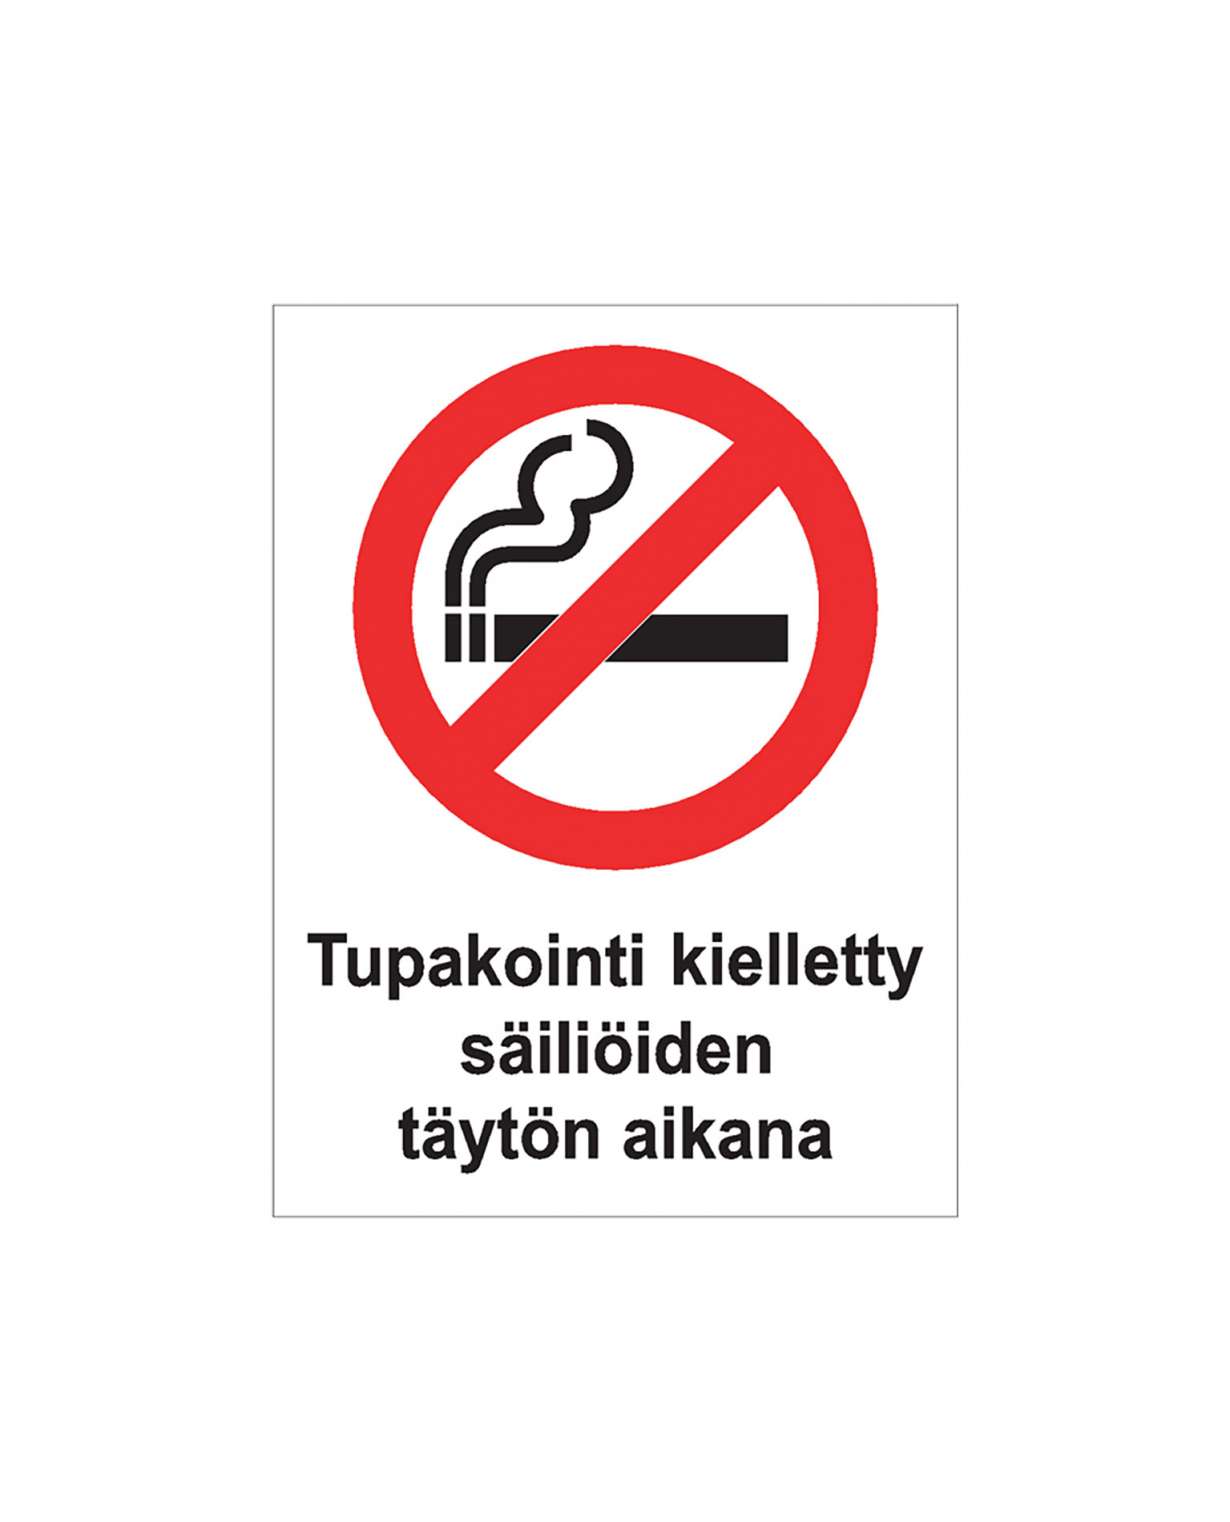 Tupakointi kielletty säiliöiden täytön aikana, Magneetti, 200x300 mm